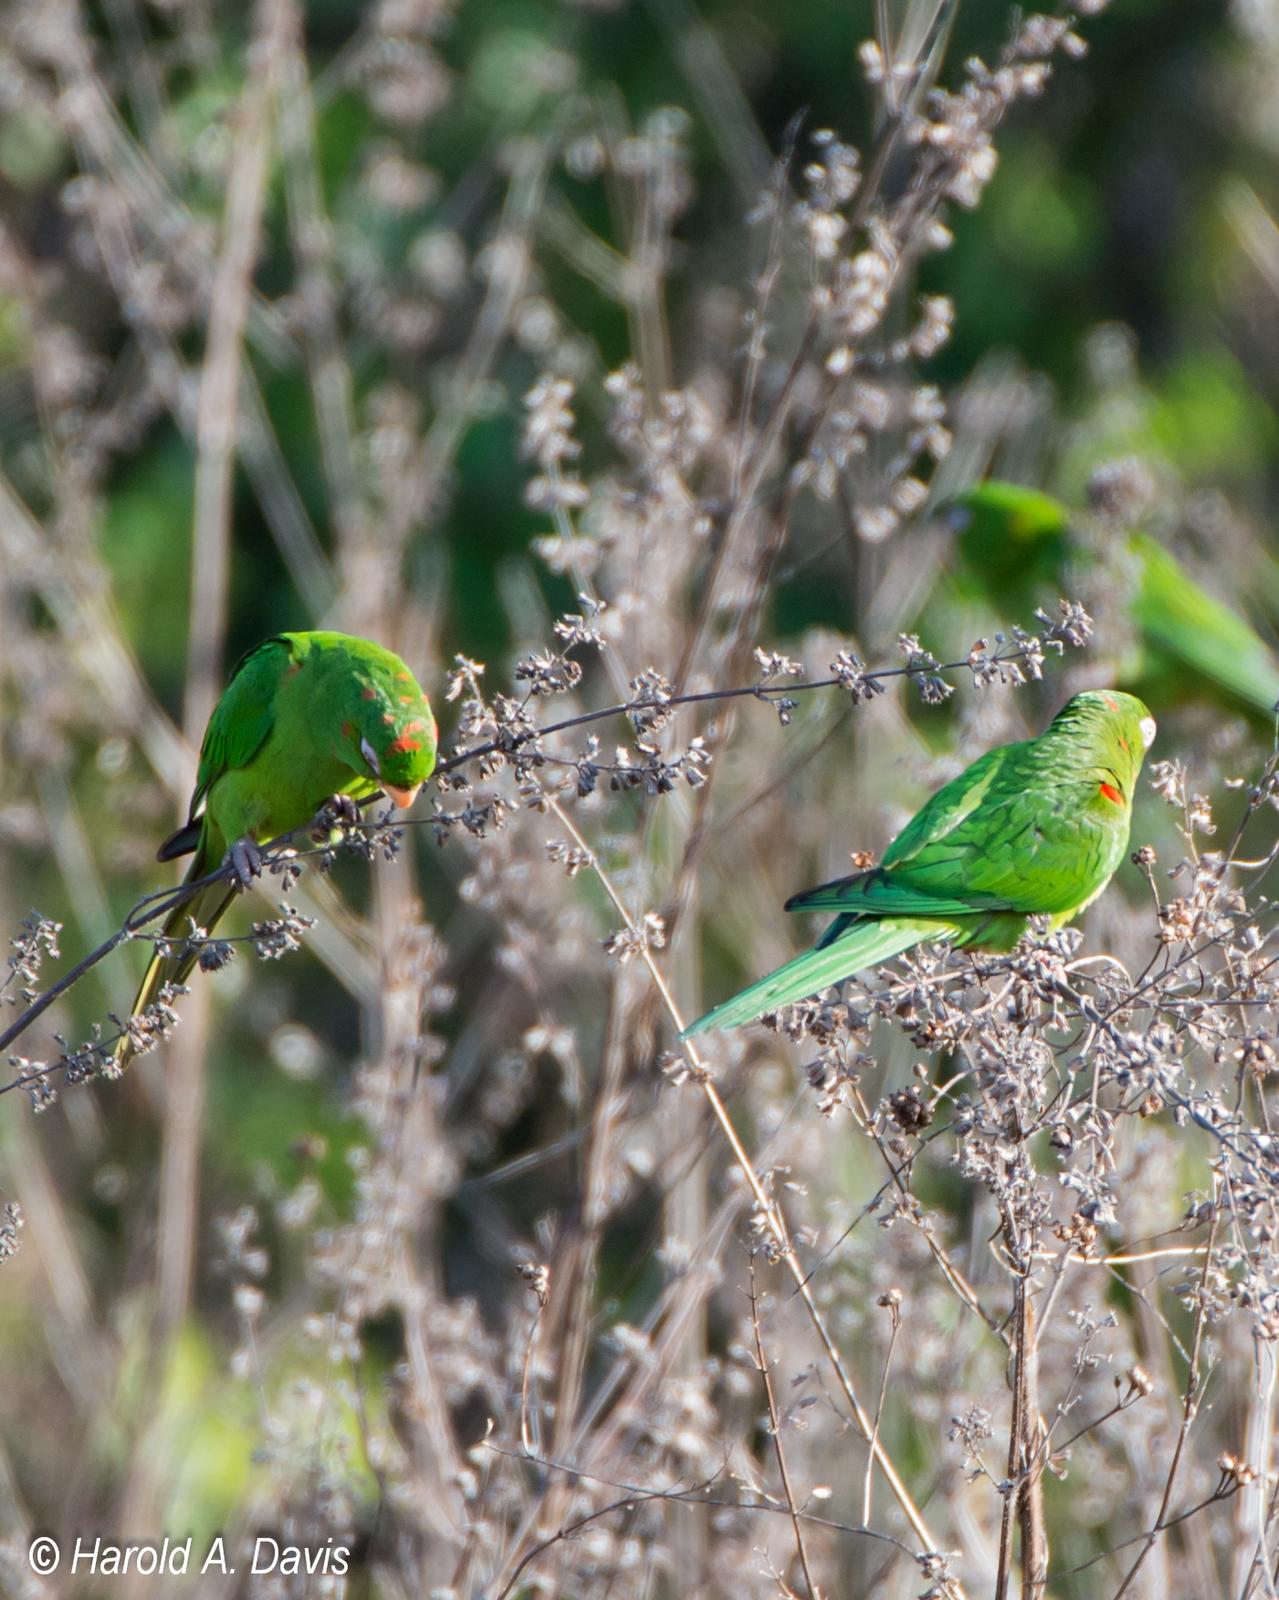 Cuban Parakeet Photo by Harold Davis